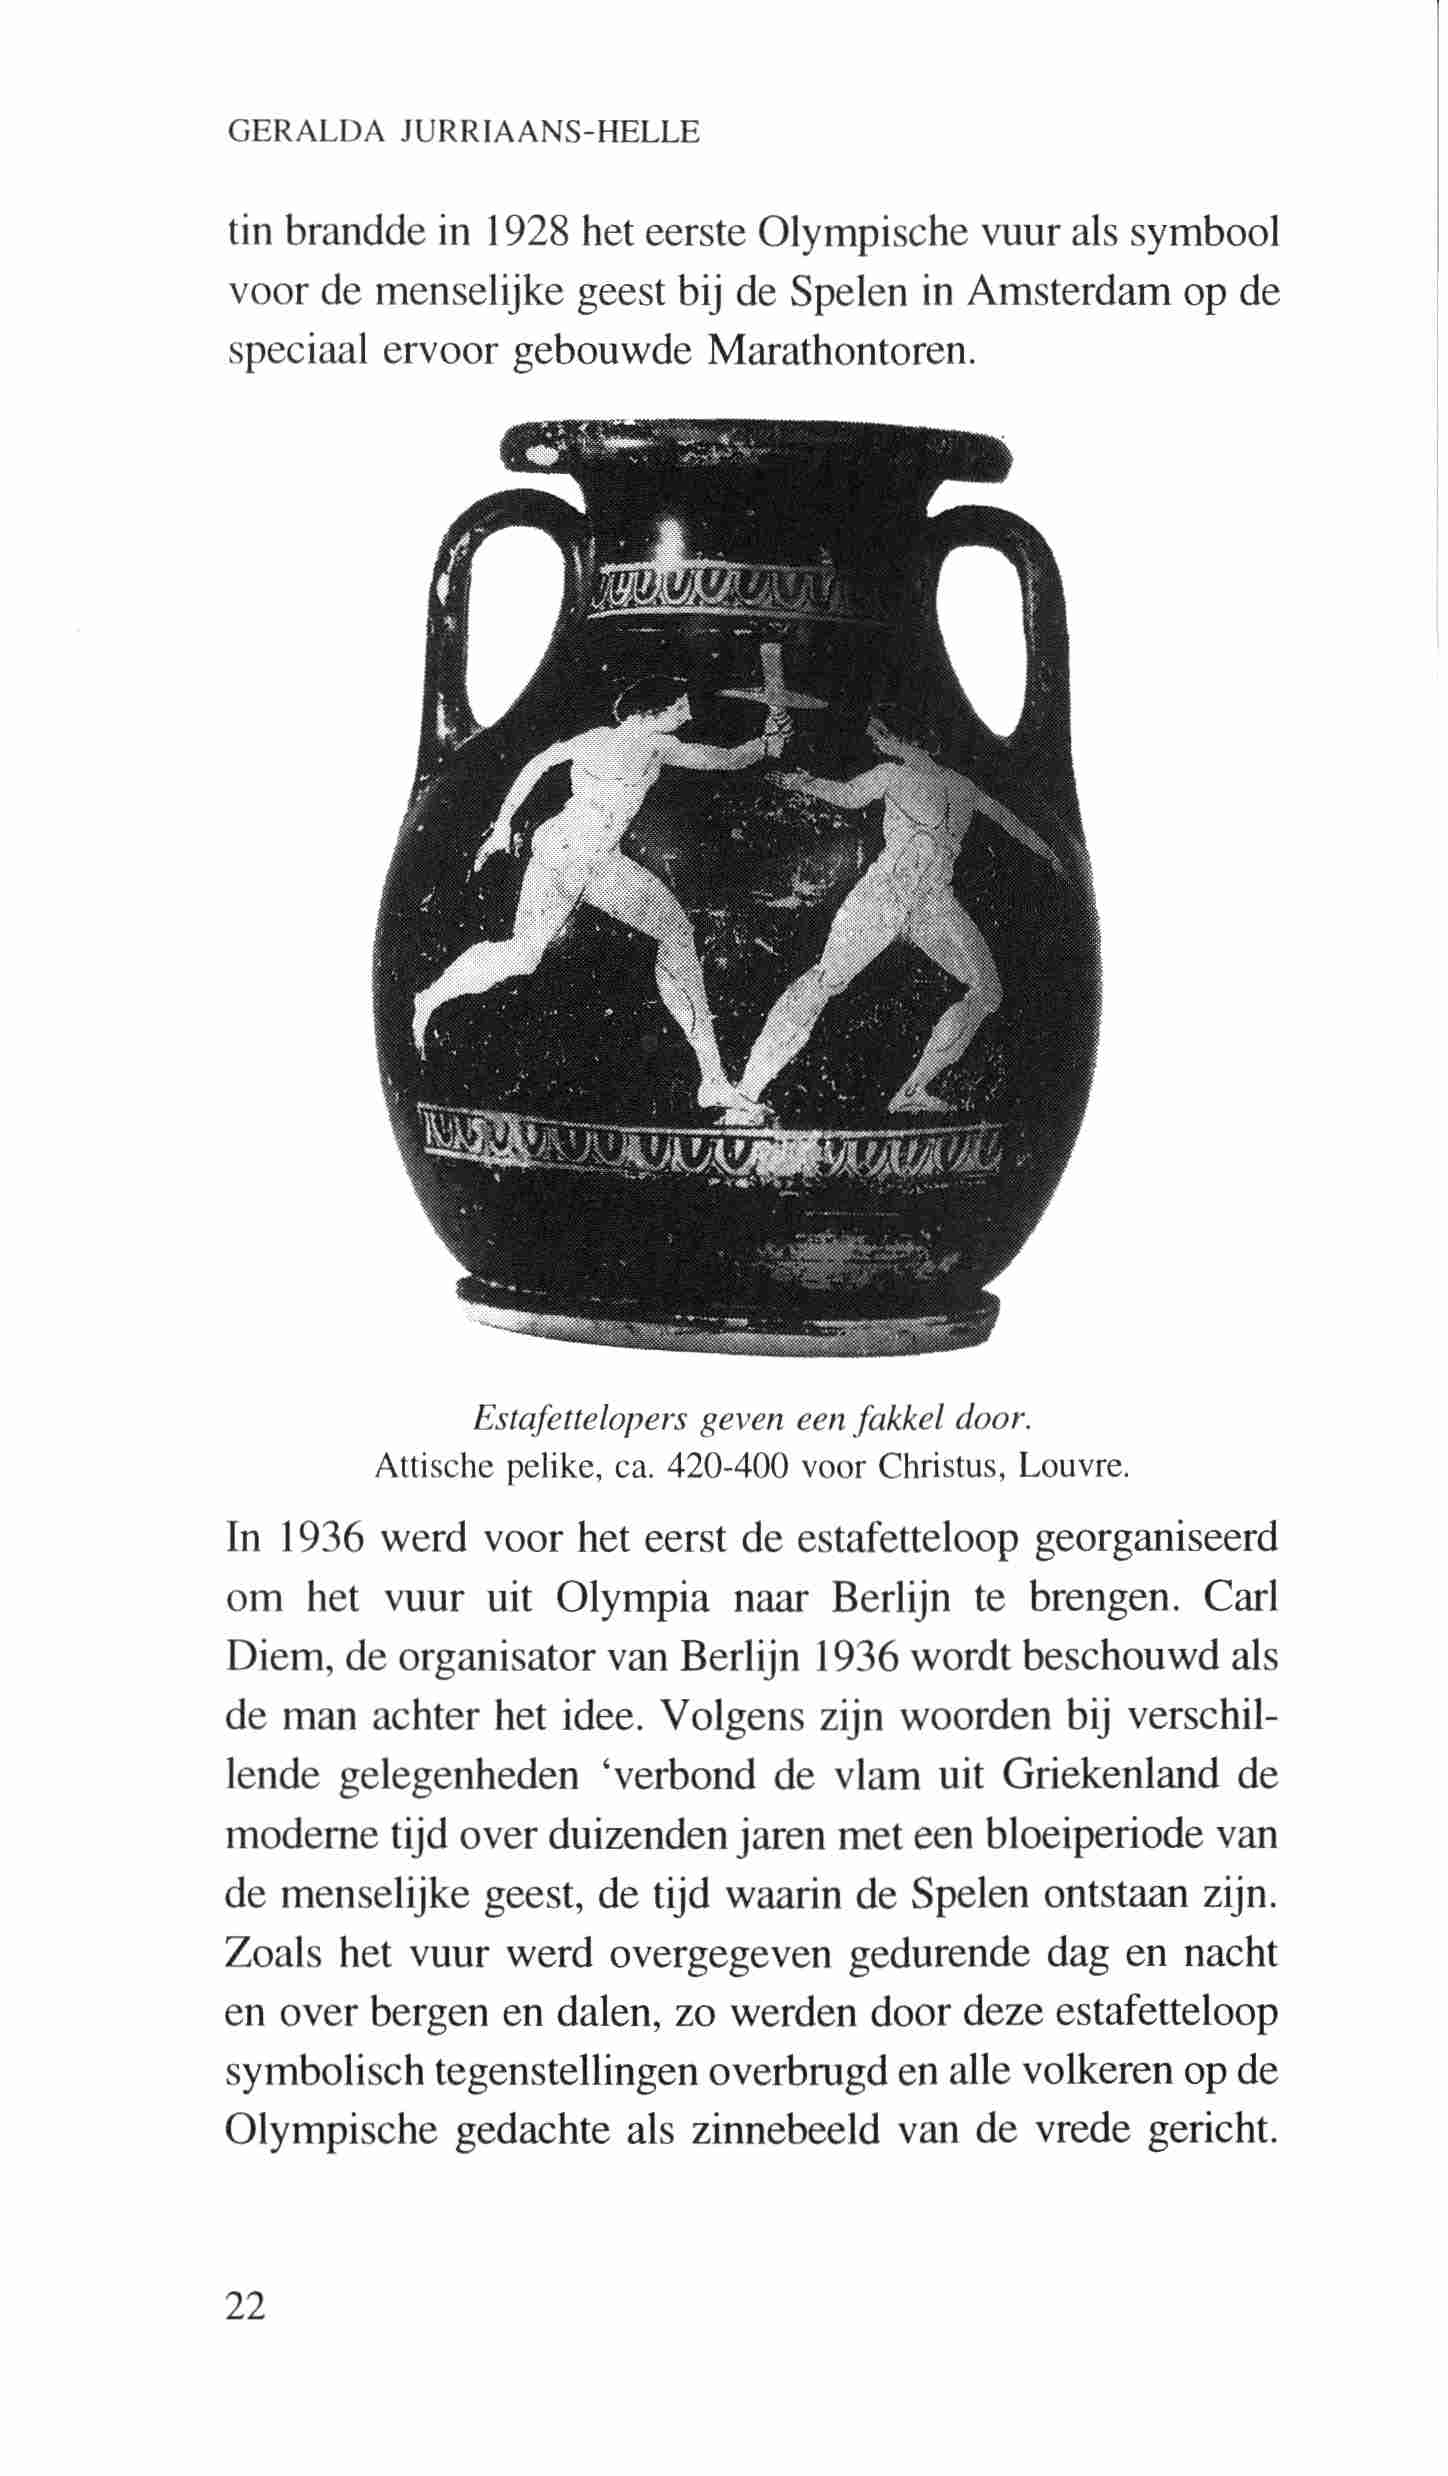 GERALDA JURRIAANS-HELLE tin brandde in 1928 het eerste Olympische vuur als symbool voor de menselijke geest bij de Spelen in Amsterdam op de speciaal ervoor gebouwde Marathontoren.